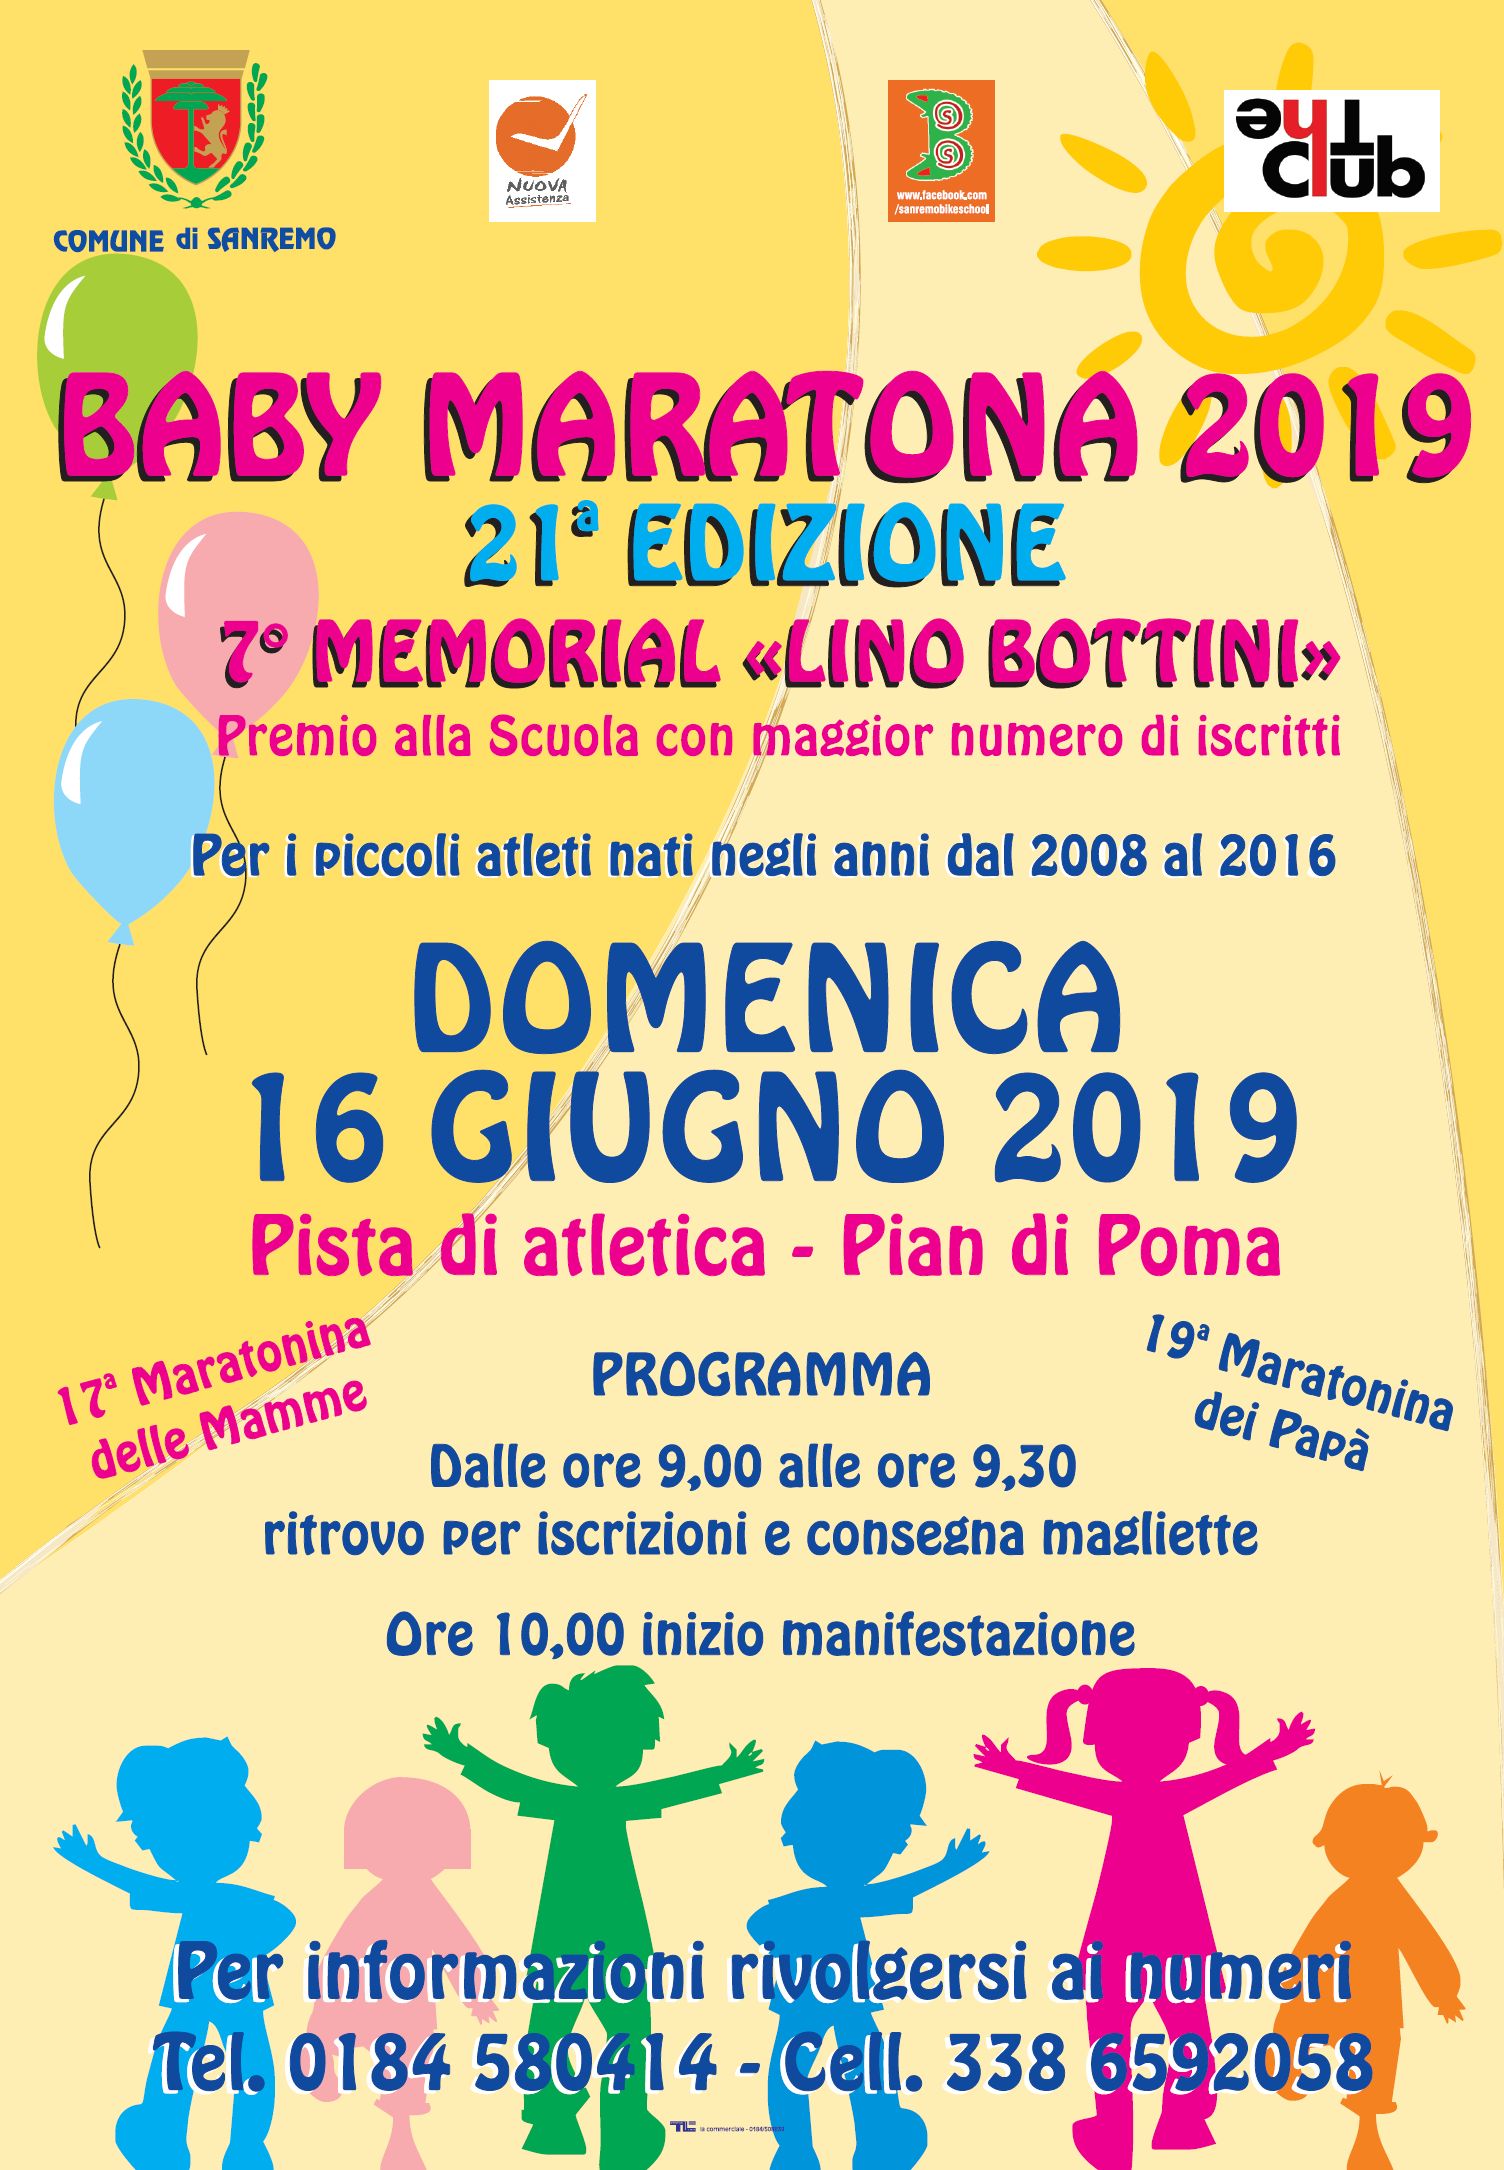 Baby Marathon 2019